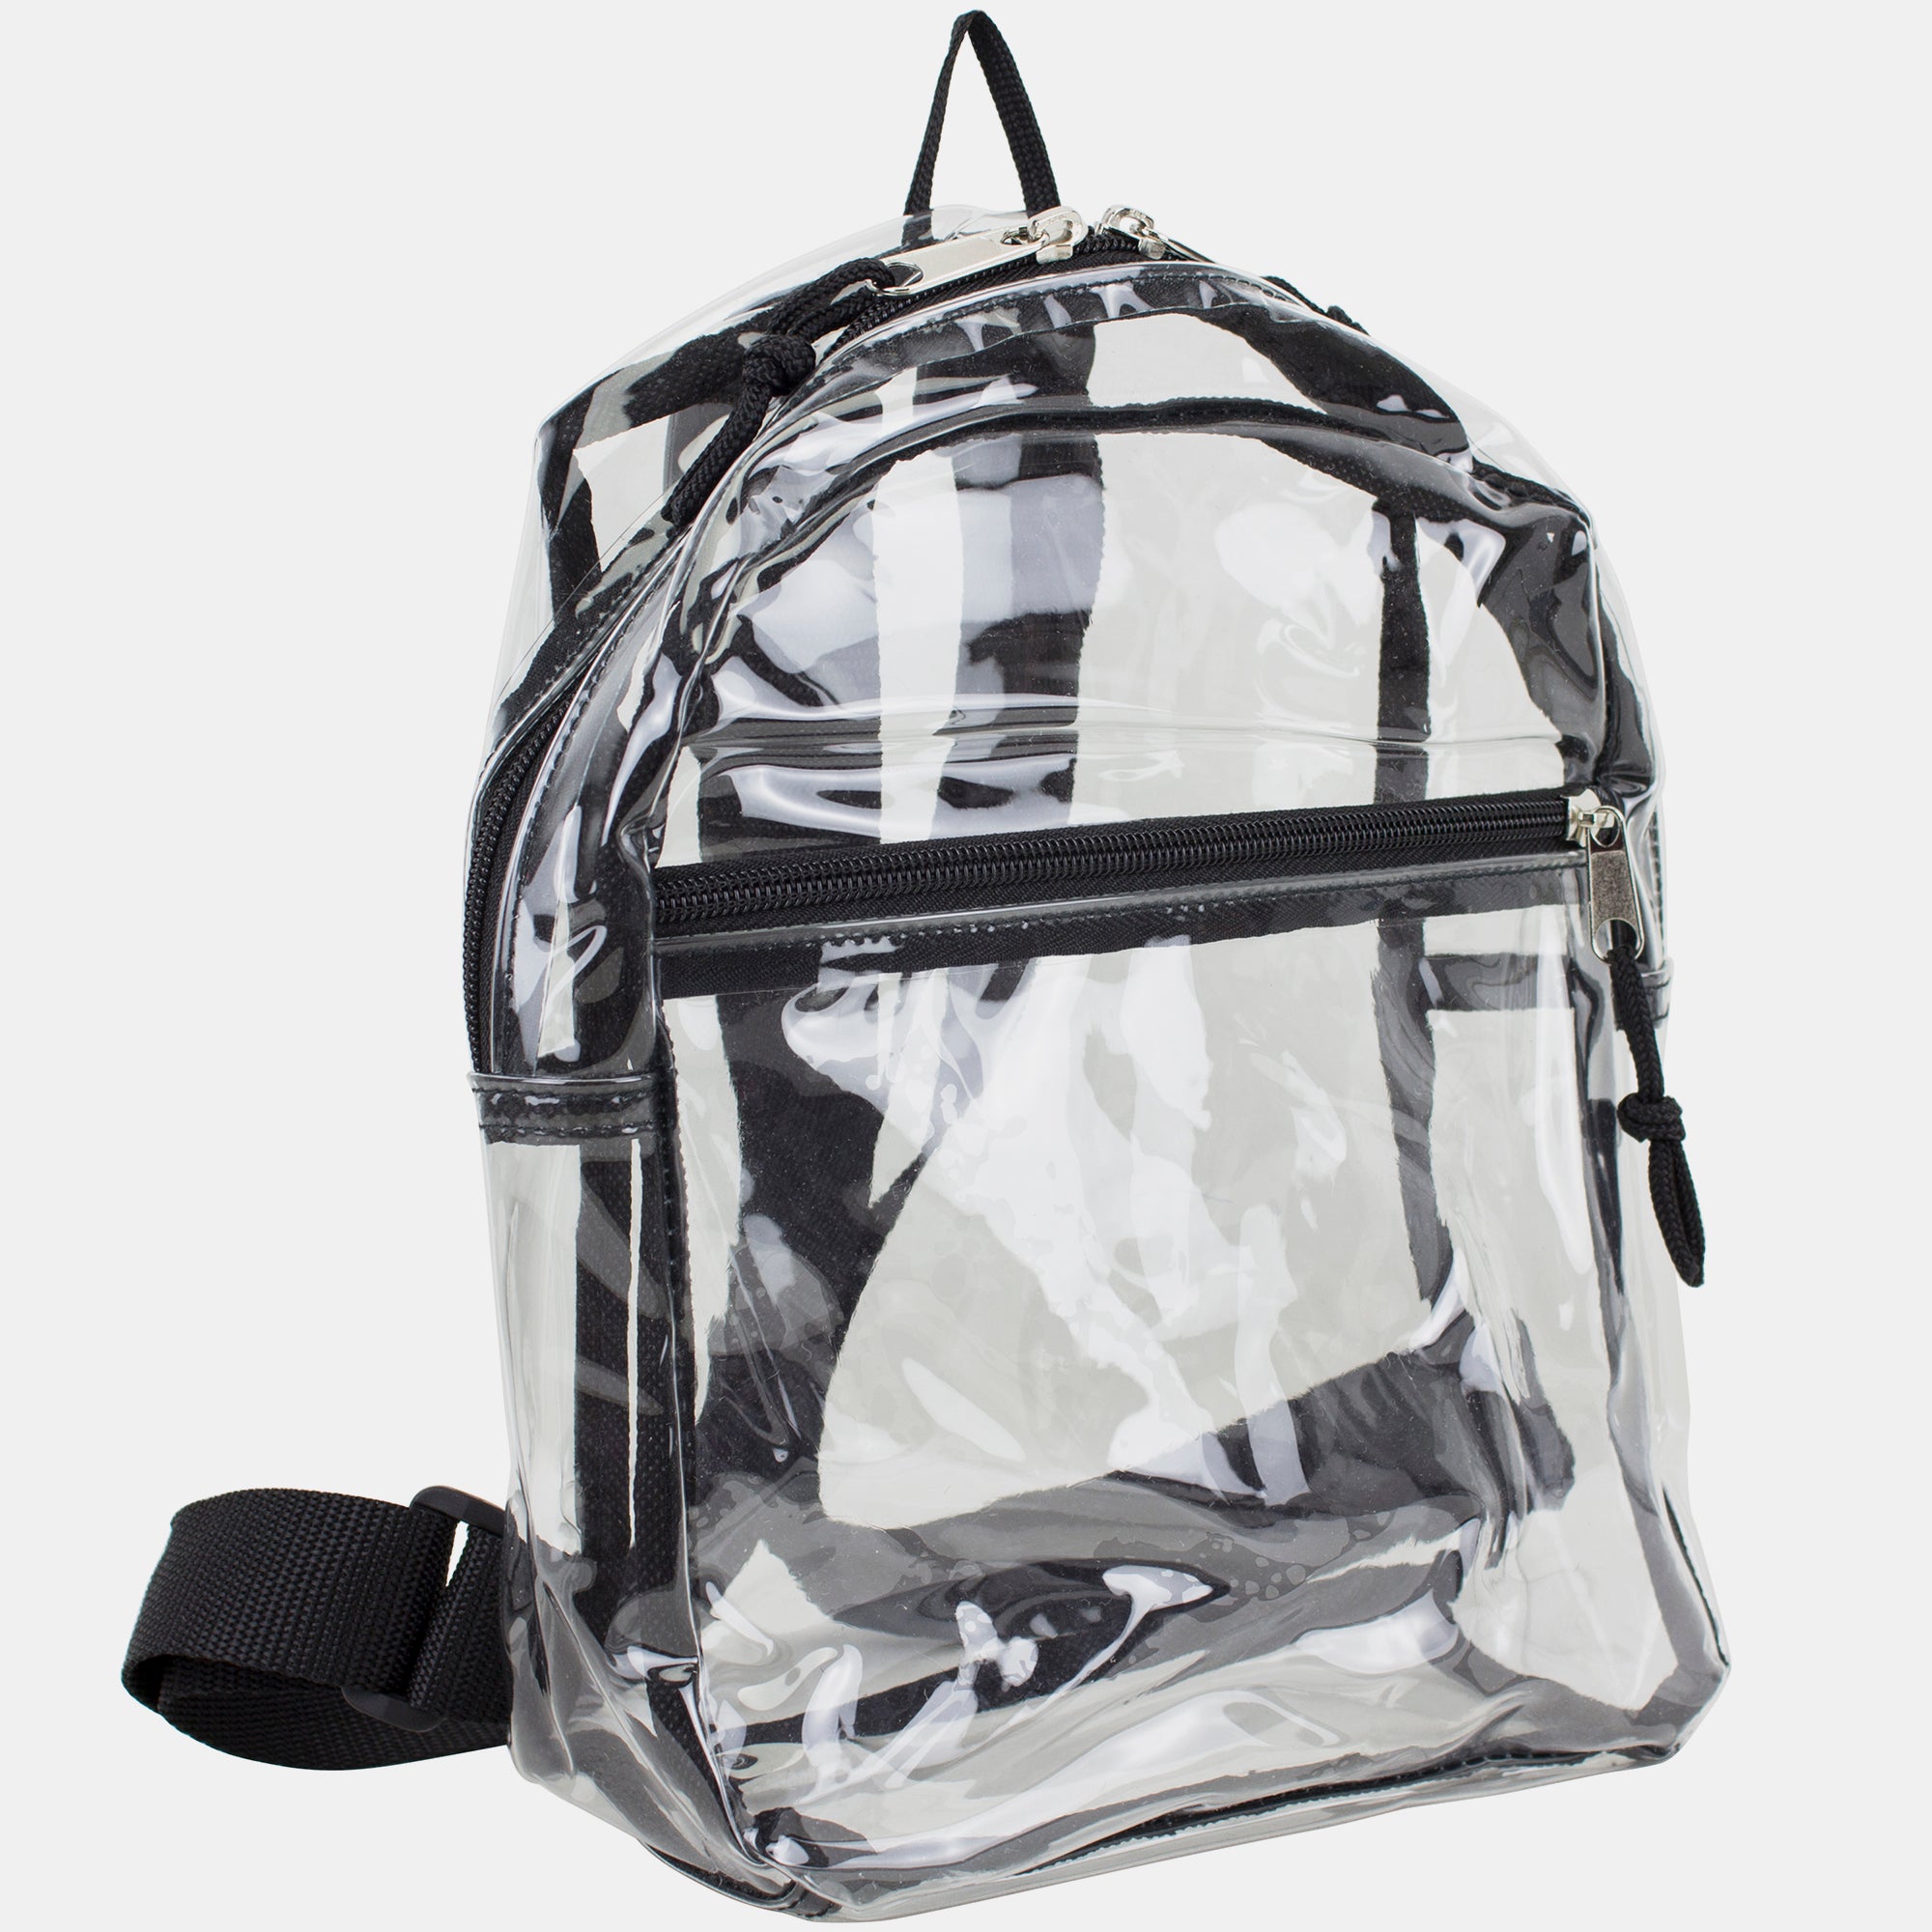 Eastsport Clear Mini Backpack - Black